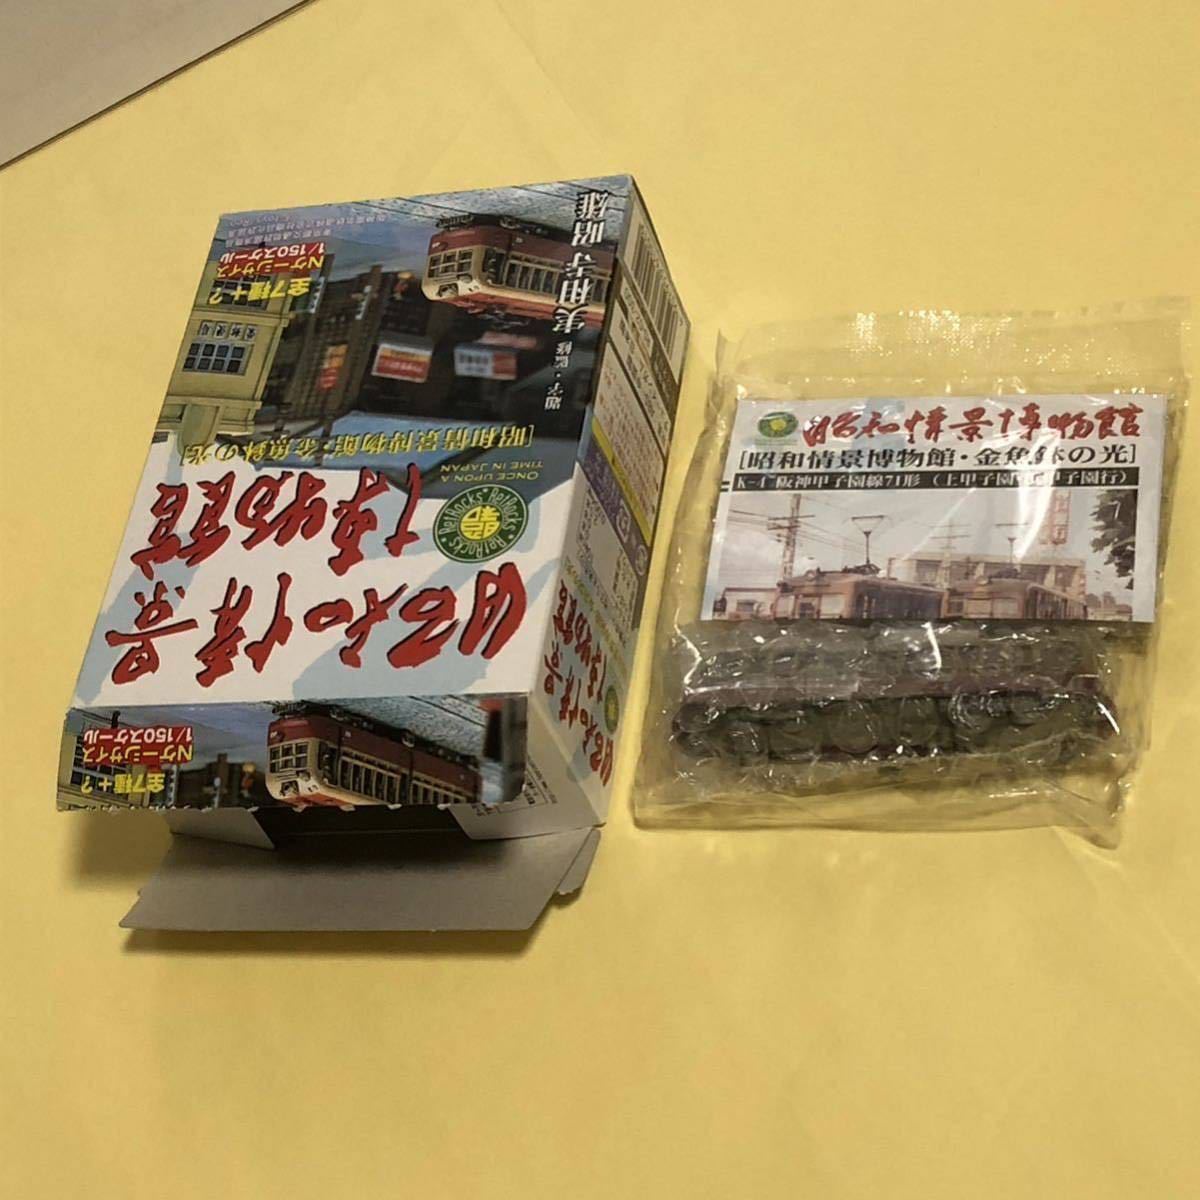 * нераспечатанный * трамвай Showa .. музей *K-4 Hanshin Koshien линия 71 форма ( Kamikoushien,. Koshien line ) * наружная коробка. вскрыть завершено 